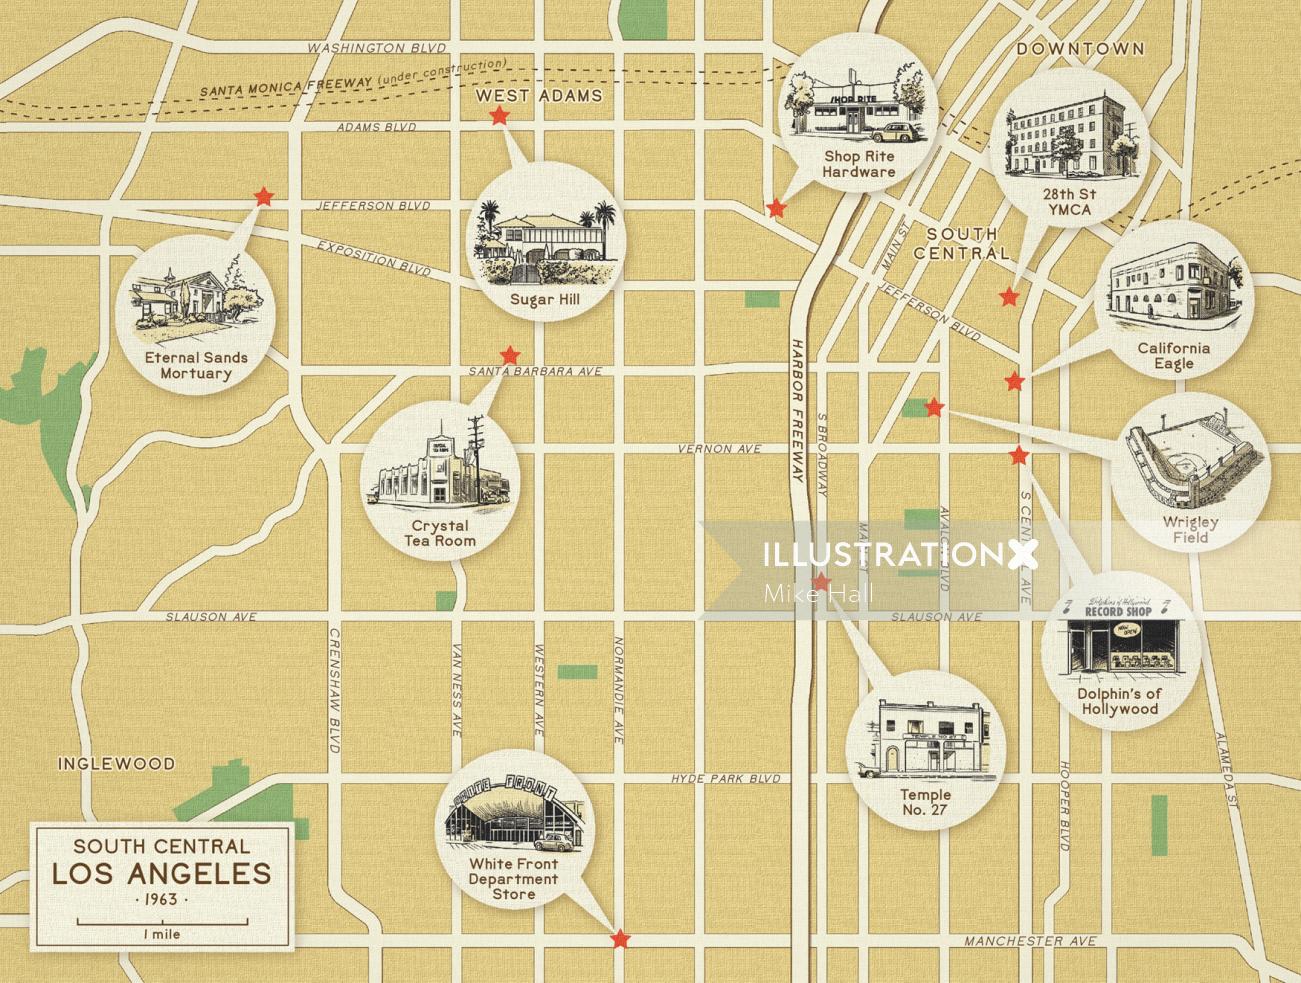 1963 年のサウス セントラル ロサンゼルスの地図デザイン